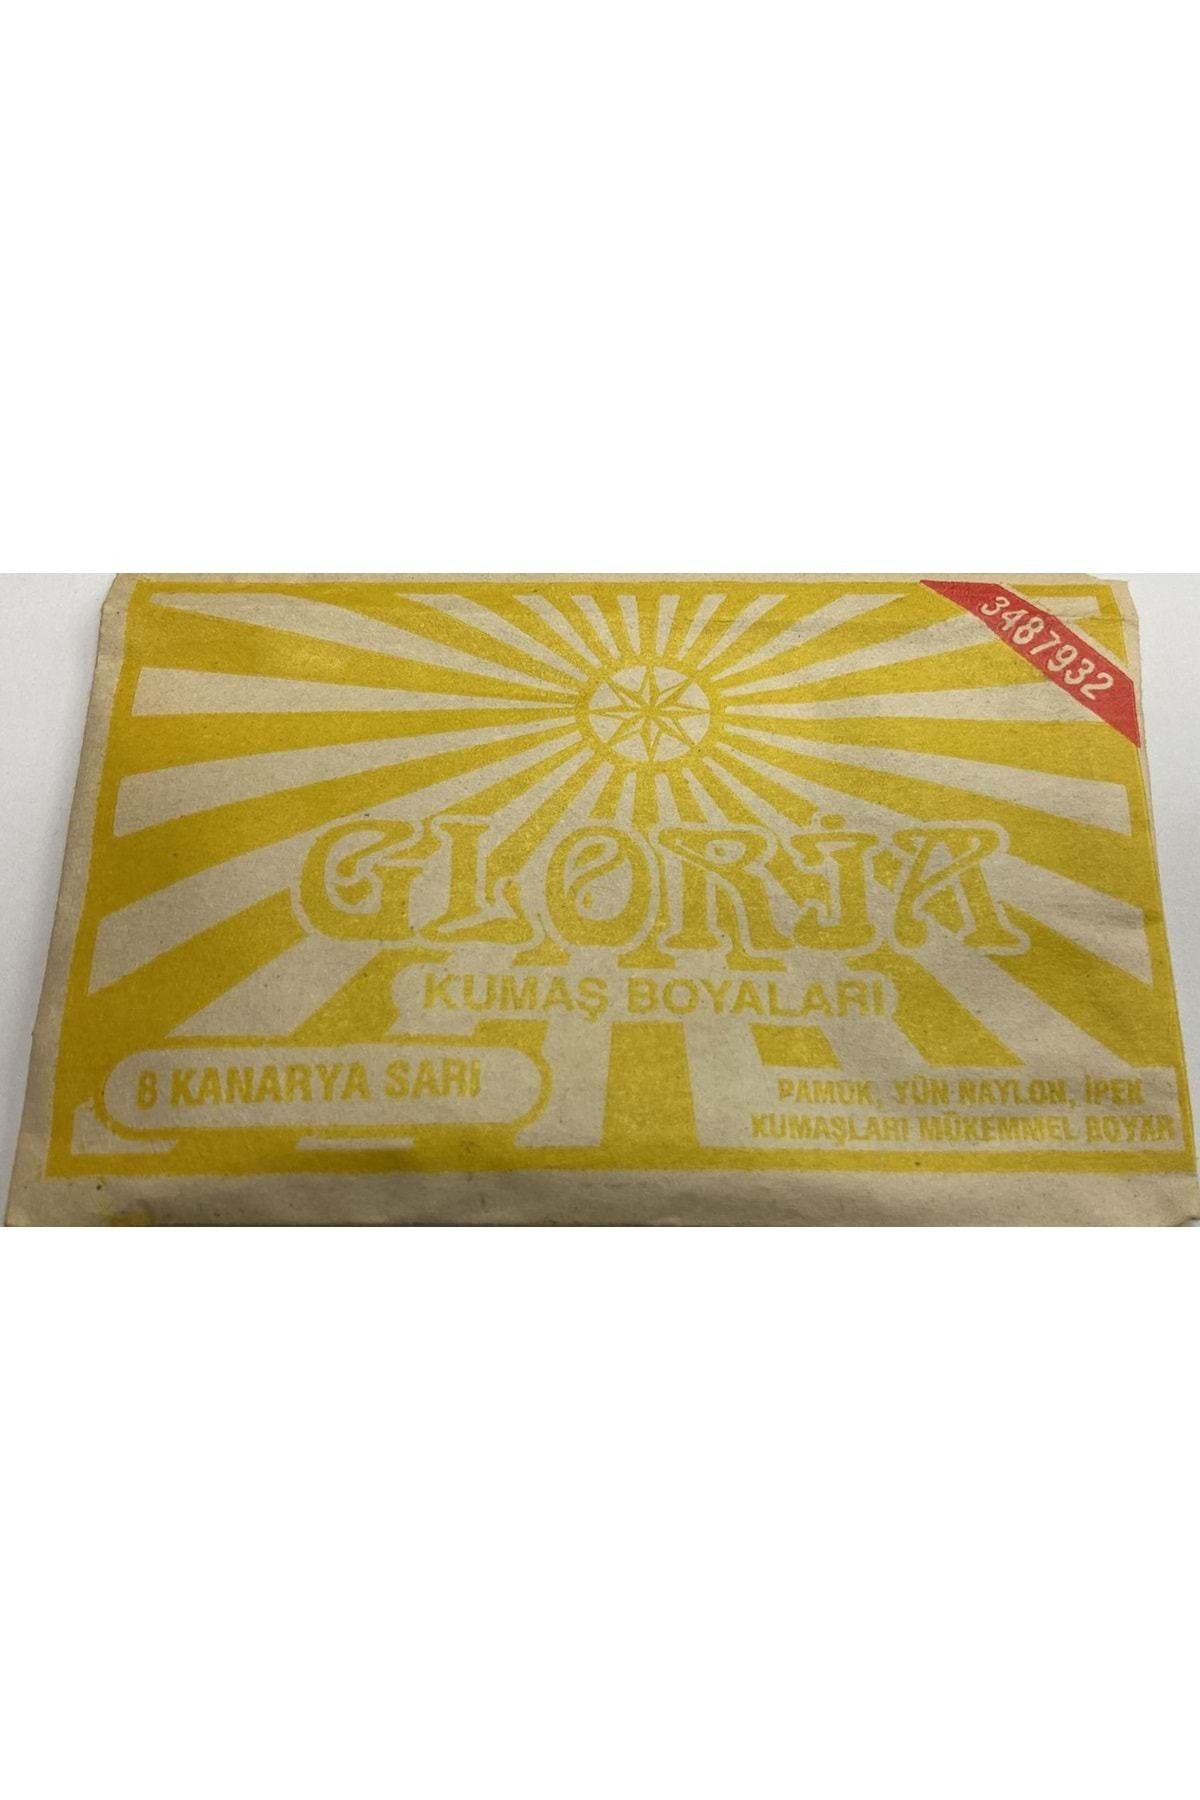 Gloria Glorıa Kumaş Boyası Kanarya Sarı 1ad. 1pk.